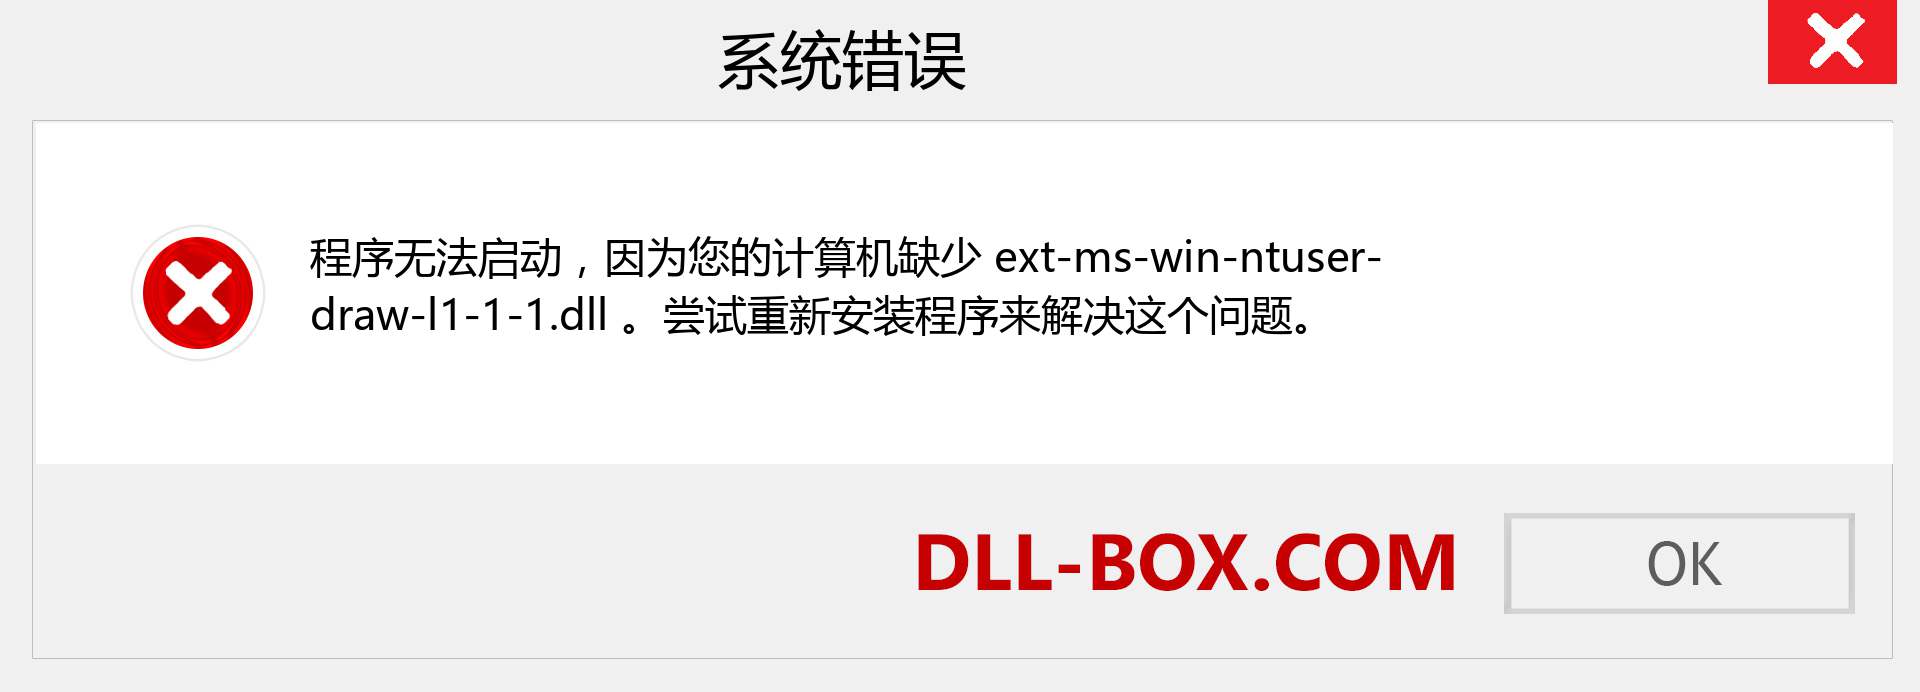 ext-ms-win-ntuser-draw-l1-1-1.dll 文件丢失？。 适用于 Windows 7、8、10 的下载 - 修复 Windows、照片、图像上的 ext-ms-win-ntuser-draw-l1-1-1 dll 丢失错误